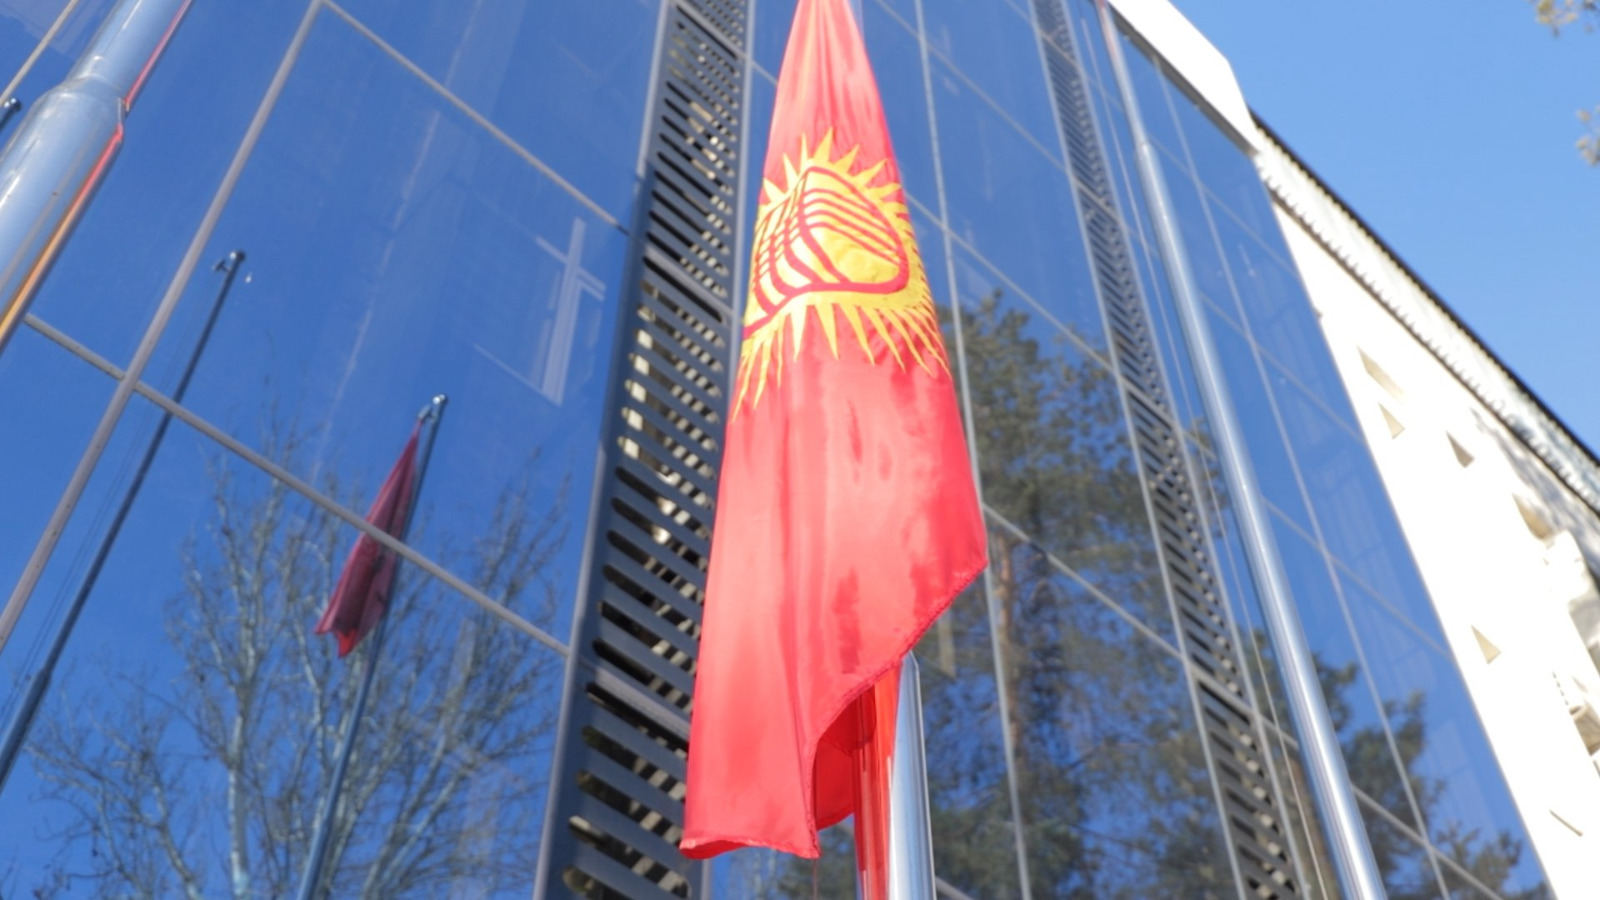 В Министерстве внутренних дел поднят новый флаг Кыргызской Республики